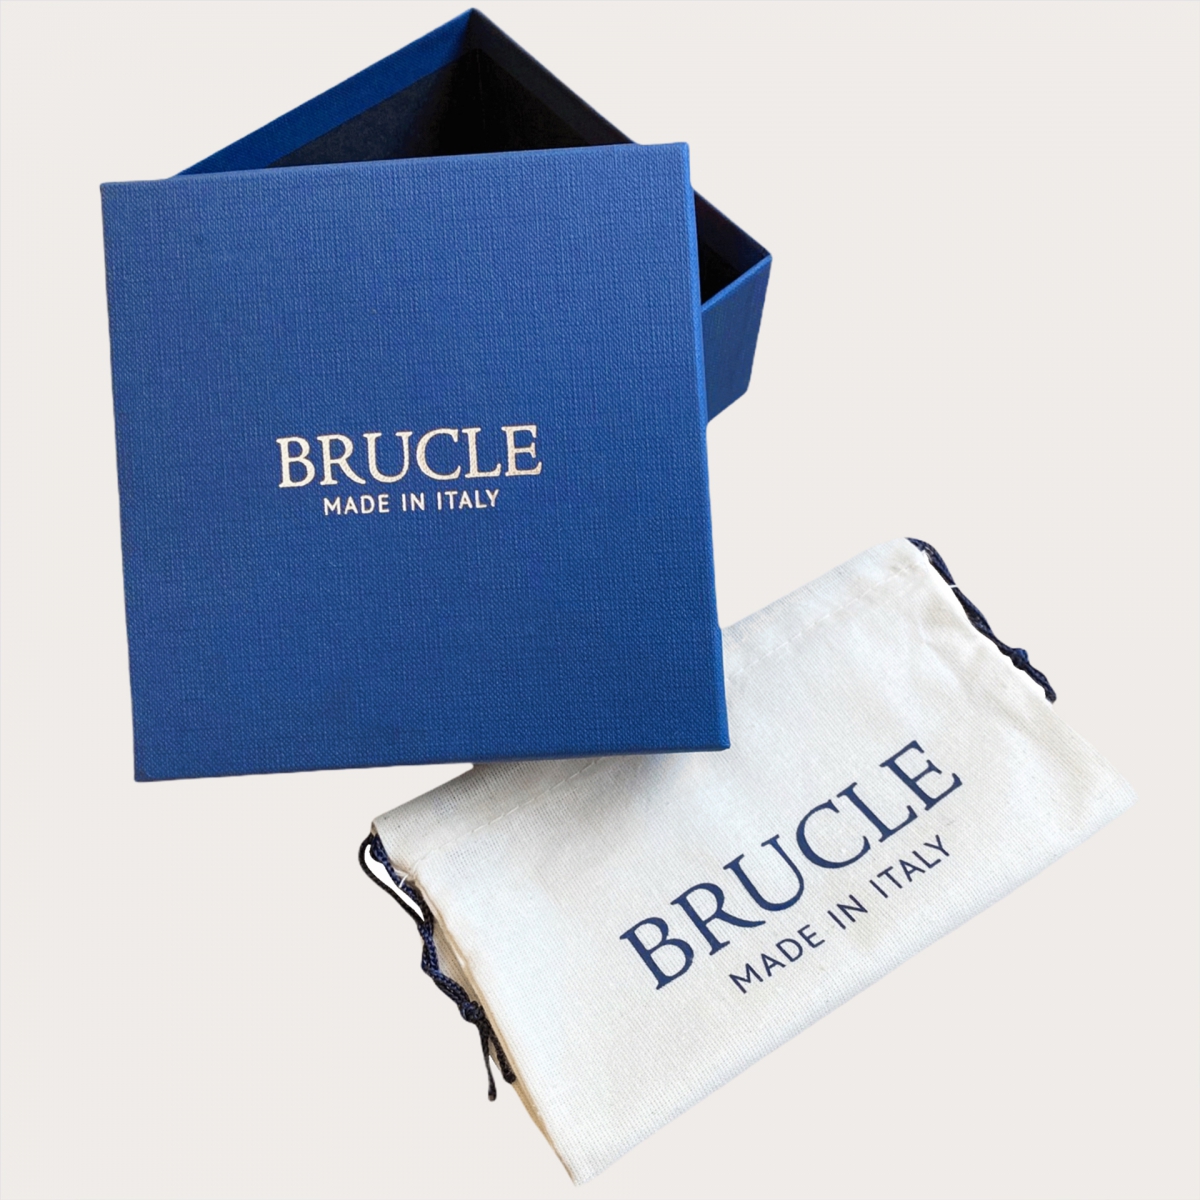 BRUCLE Jeans-Gürtel aus Jeansblau und Leder